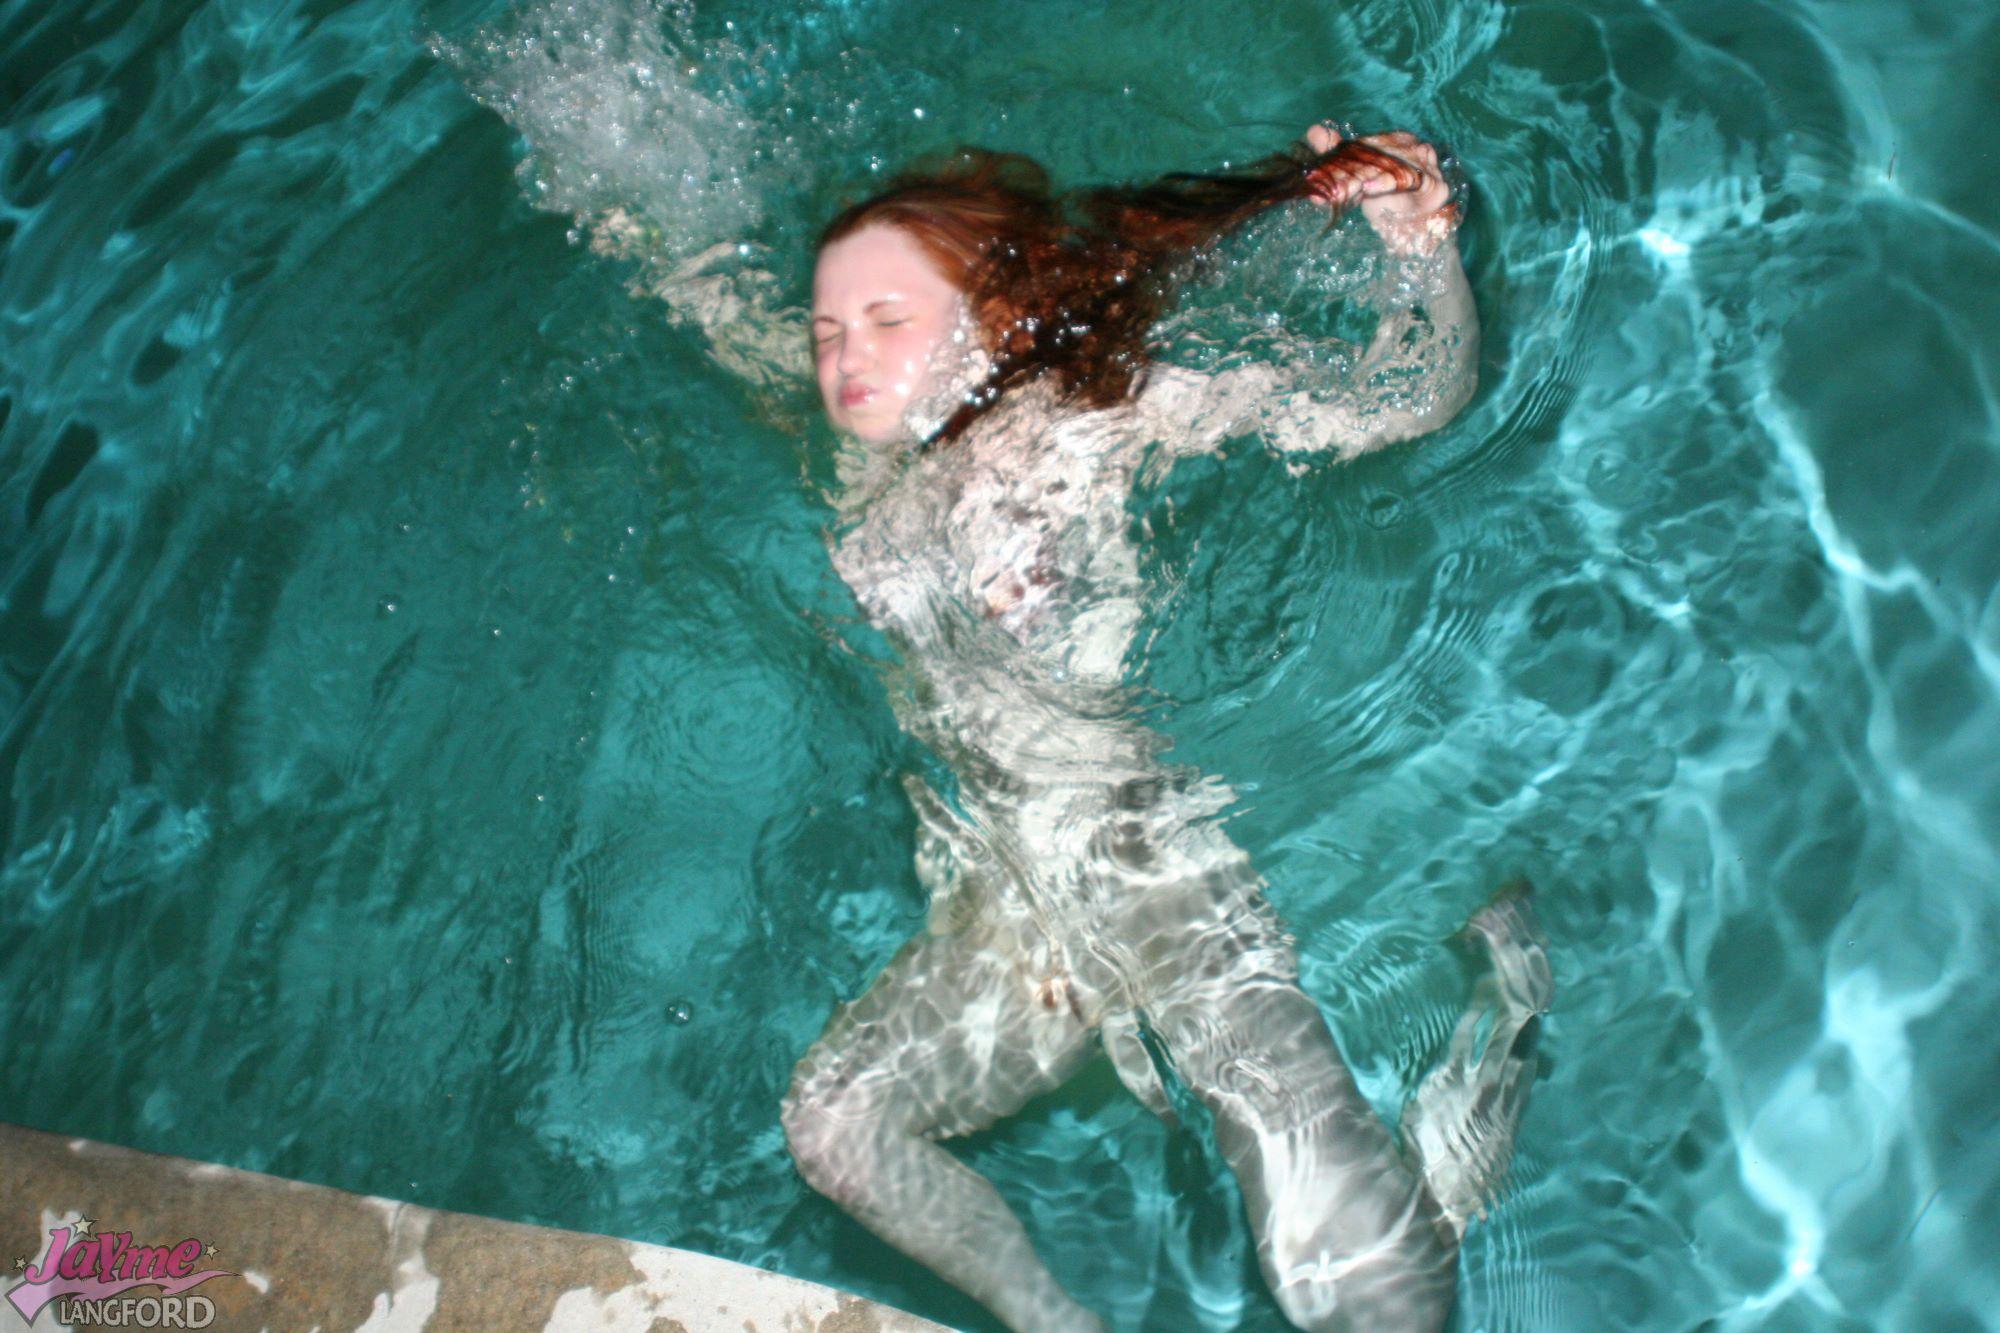 Fotos de jayme langford nadando desnuda
 #55215721